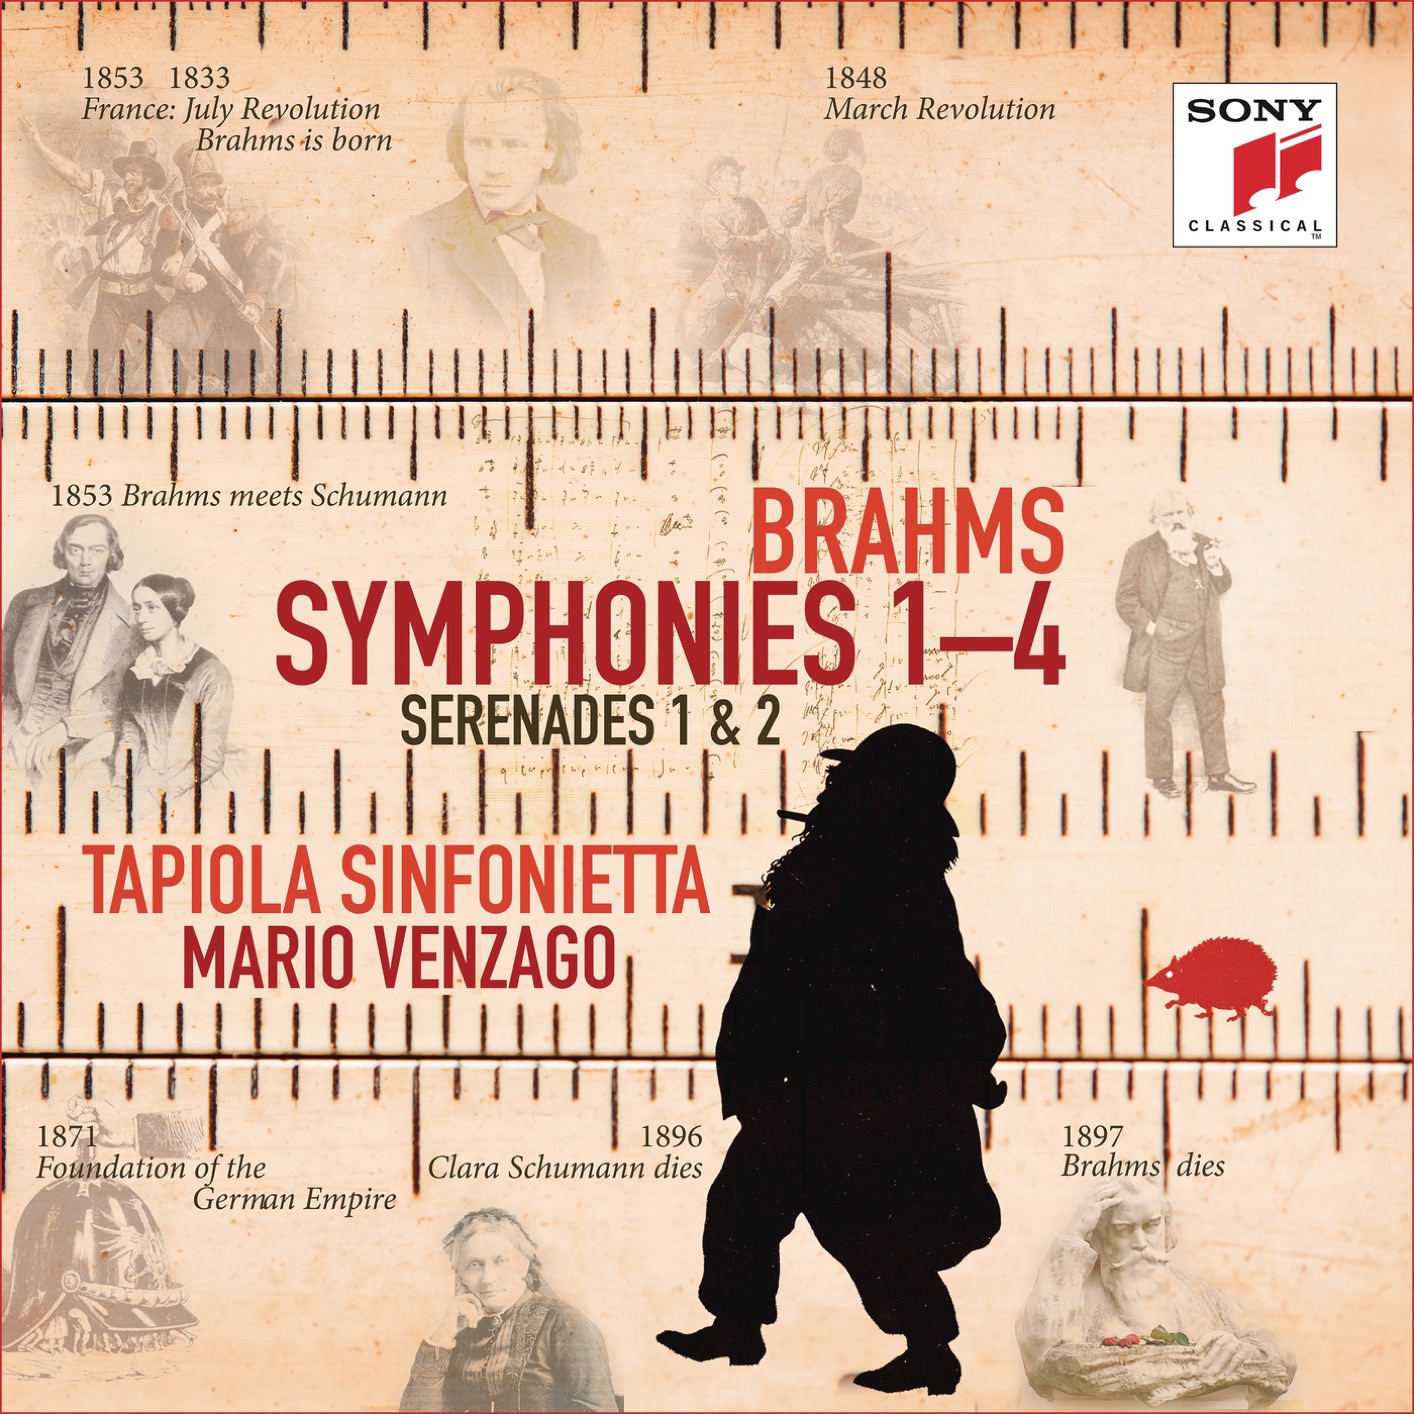 Tapiola Sinfonietta & Mario Venzago - Brahms: Symphonies Nos. 1-4, Serenades Nos. 1 & 2 (2018) [FLAC 24bit/96kHz]